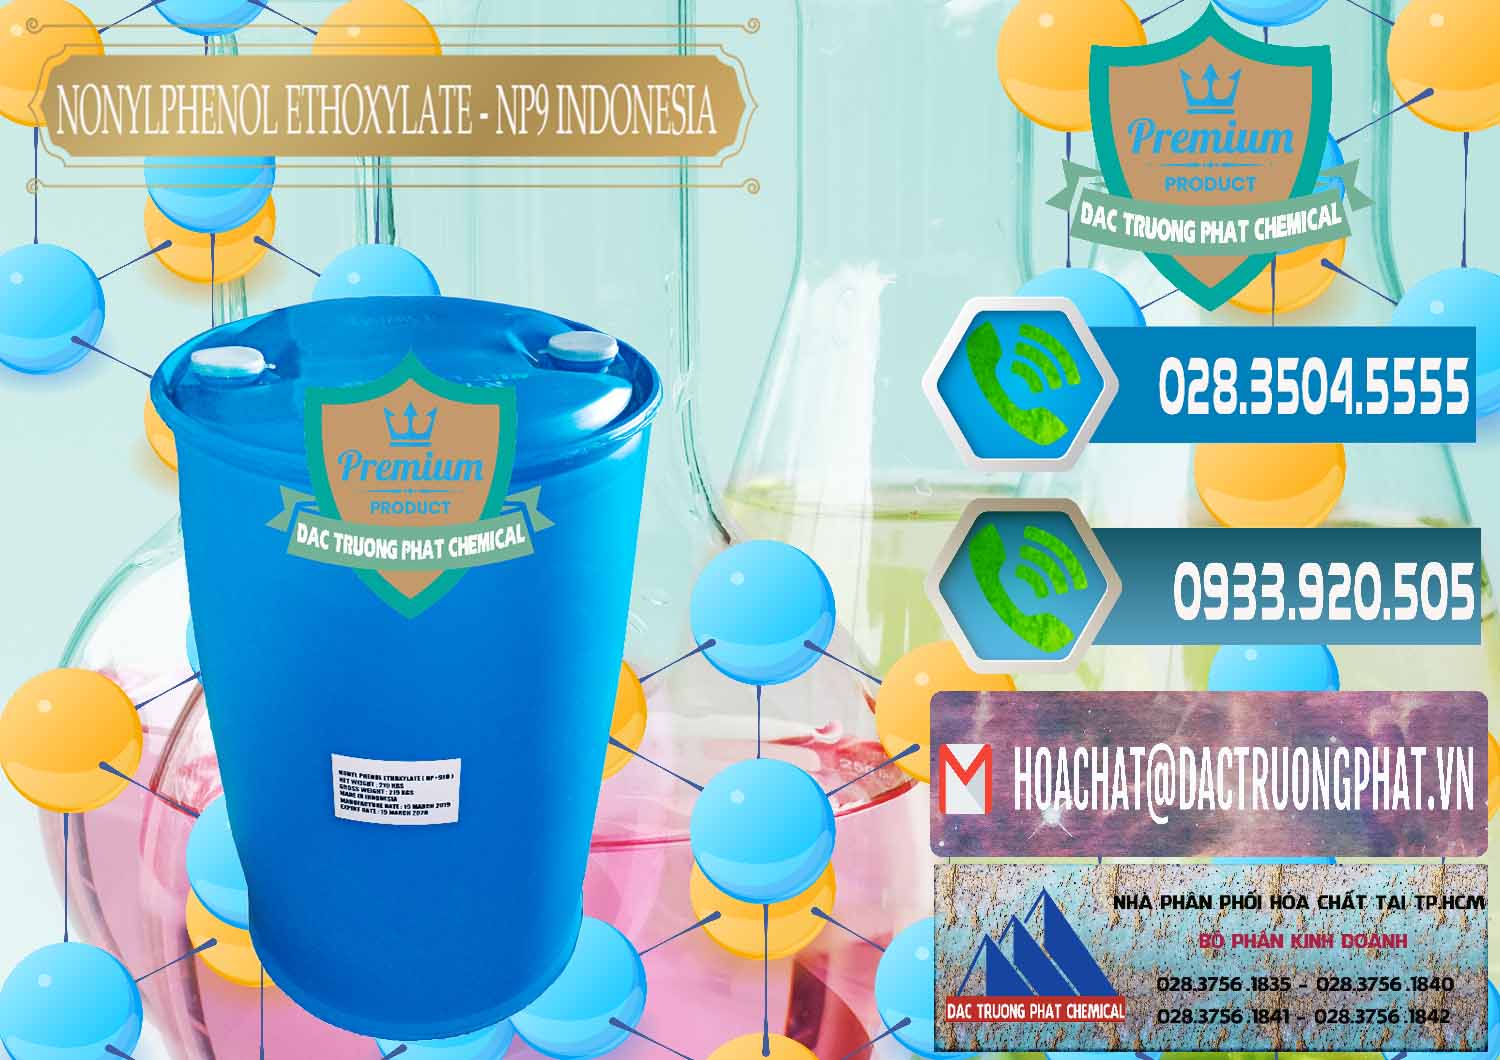 Nơi kinh doanh và bán NP9 - Nonyl Phenol Ethoxylate Indonesia - 0317 - Nhà phân phối - nhập khẩu hóa chất tại TP.HCM - congtyhoachat.net